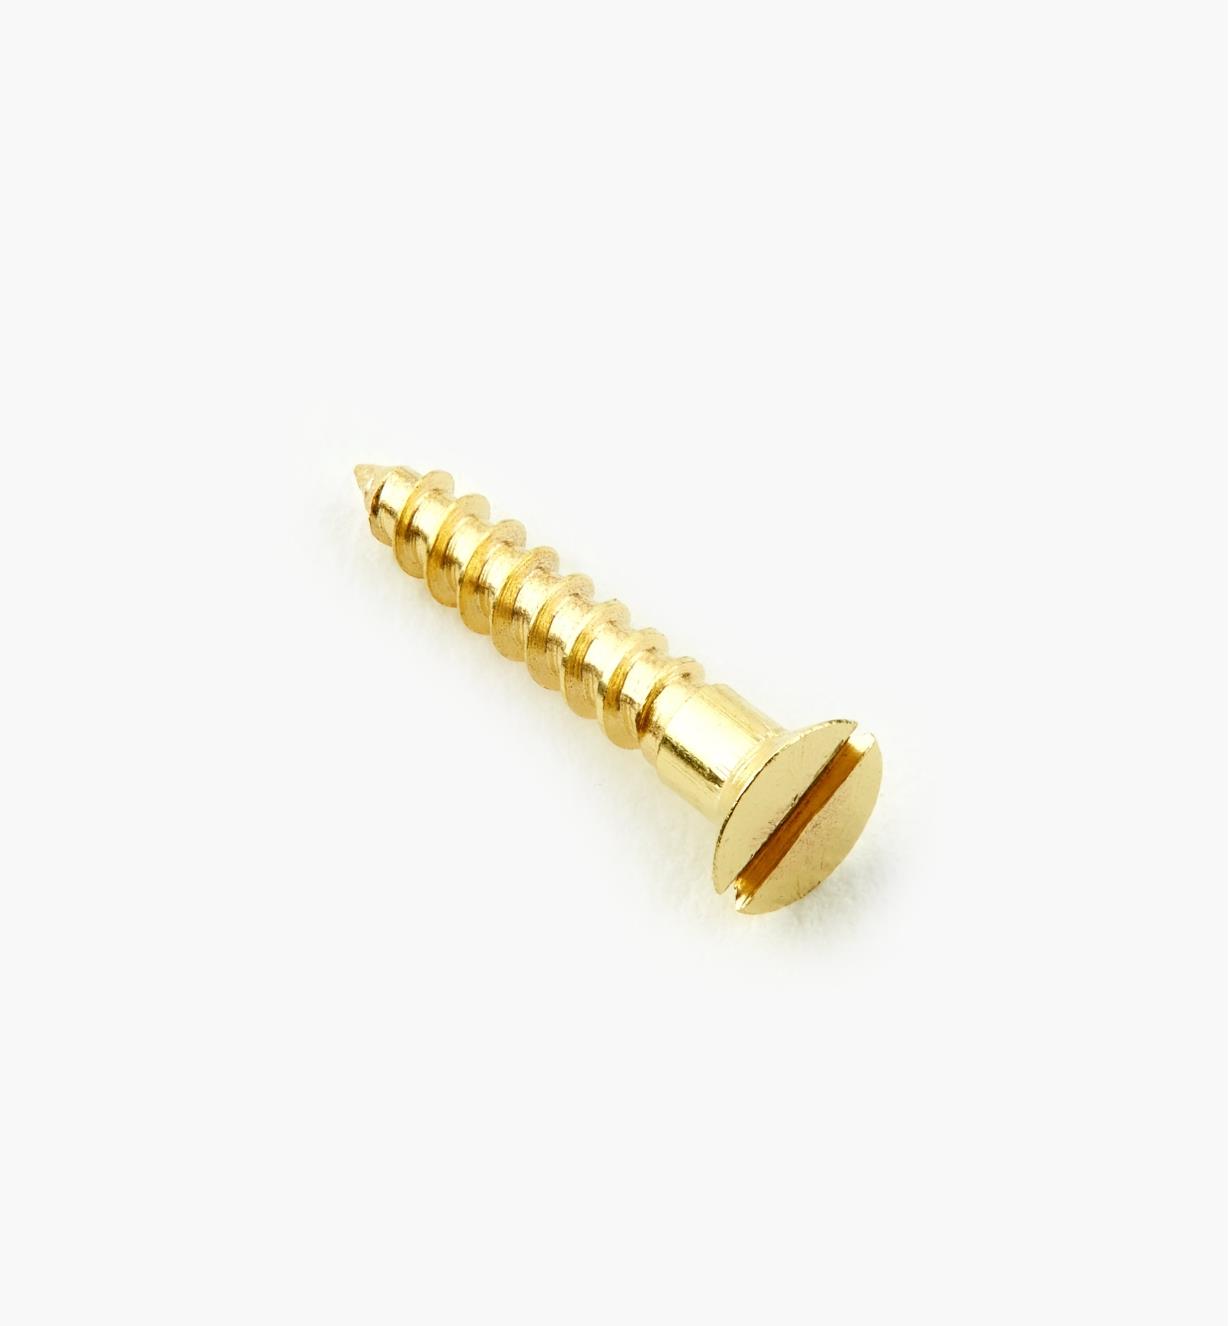 91Z0203 - #2, 1/2" Flat Brass Screws, pkg. of 100